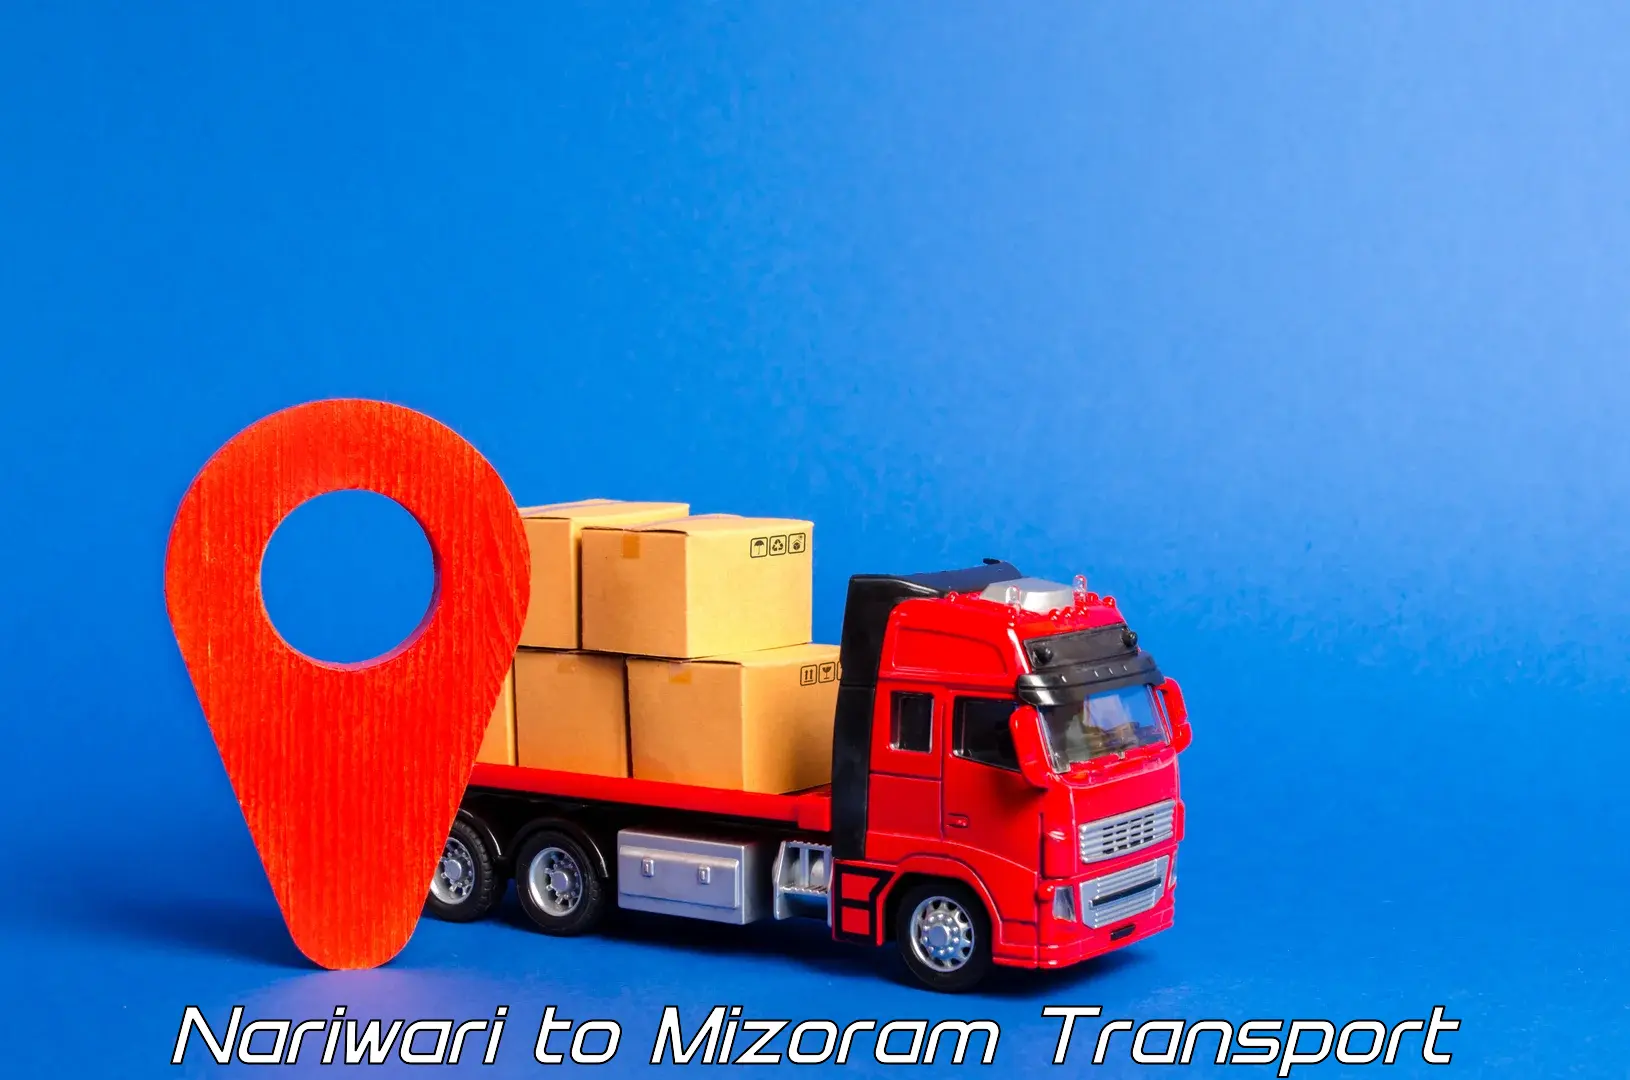 Cargo train transport services Nariwari to Mizoram